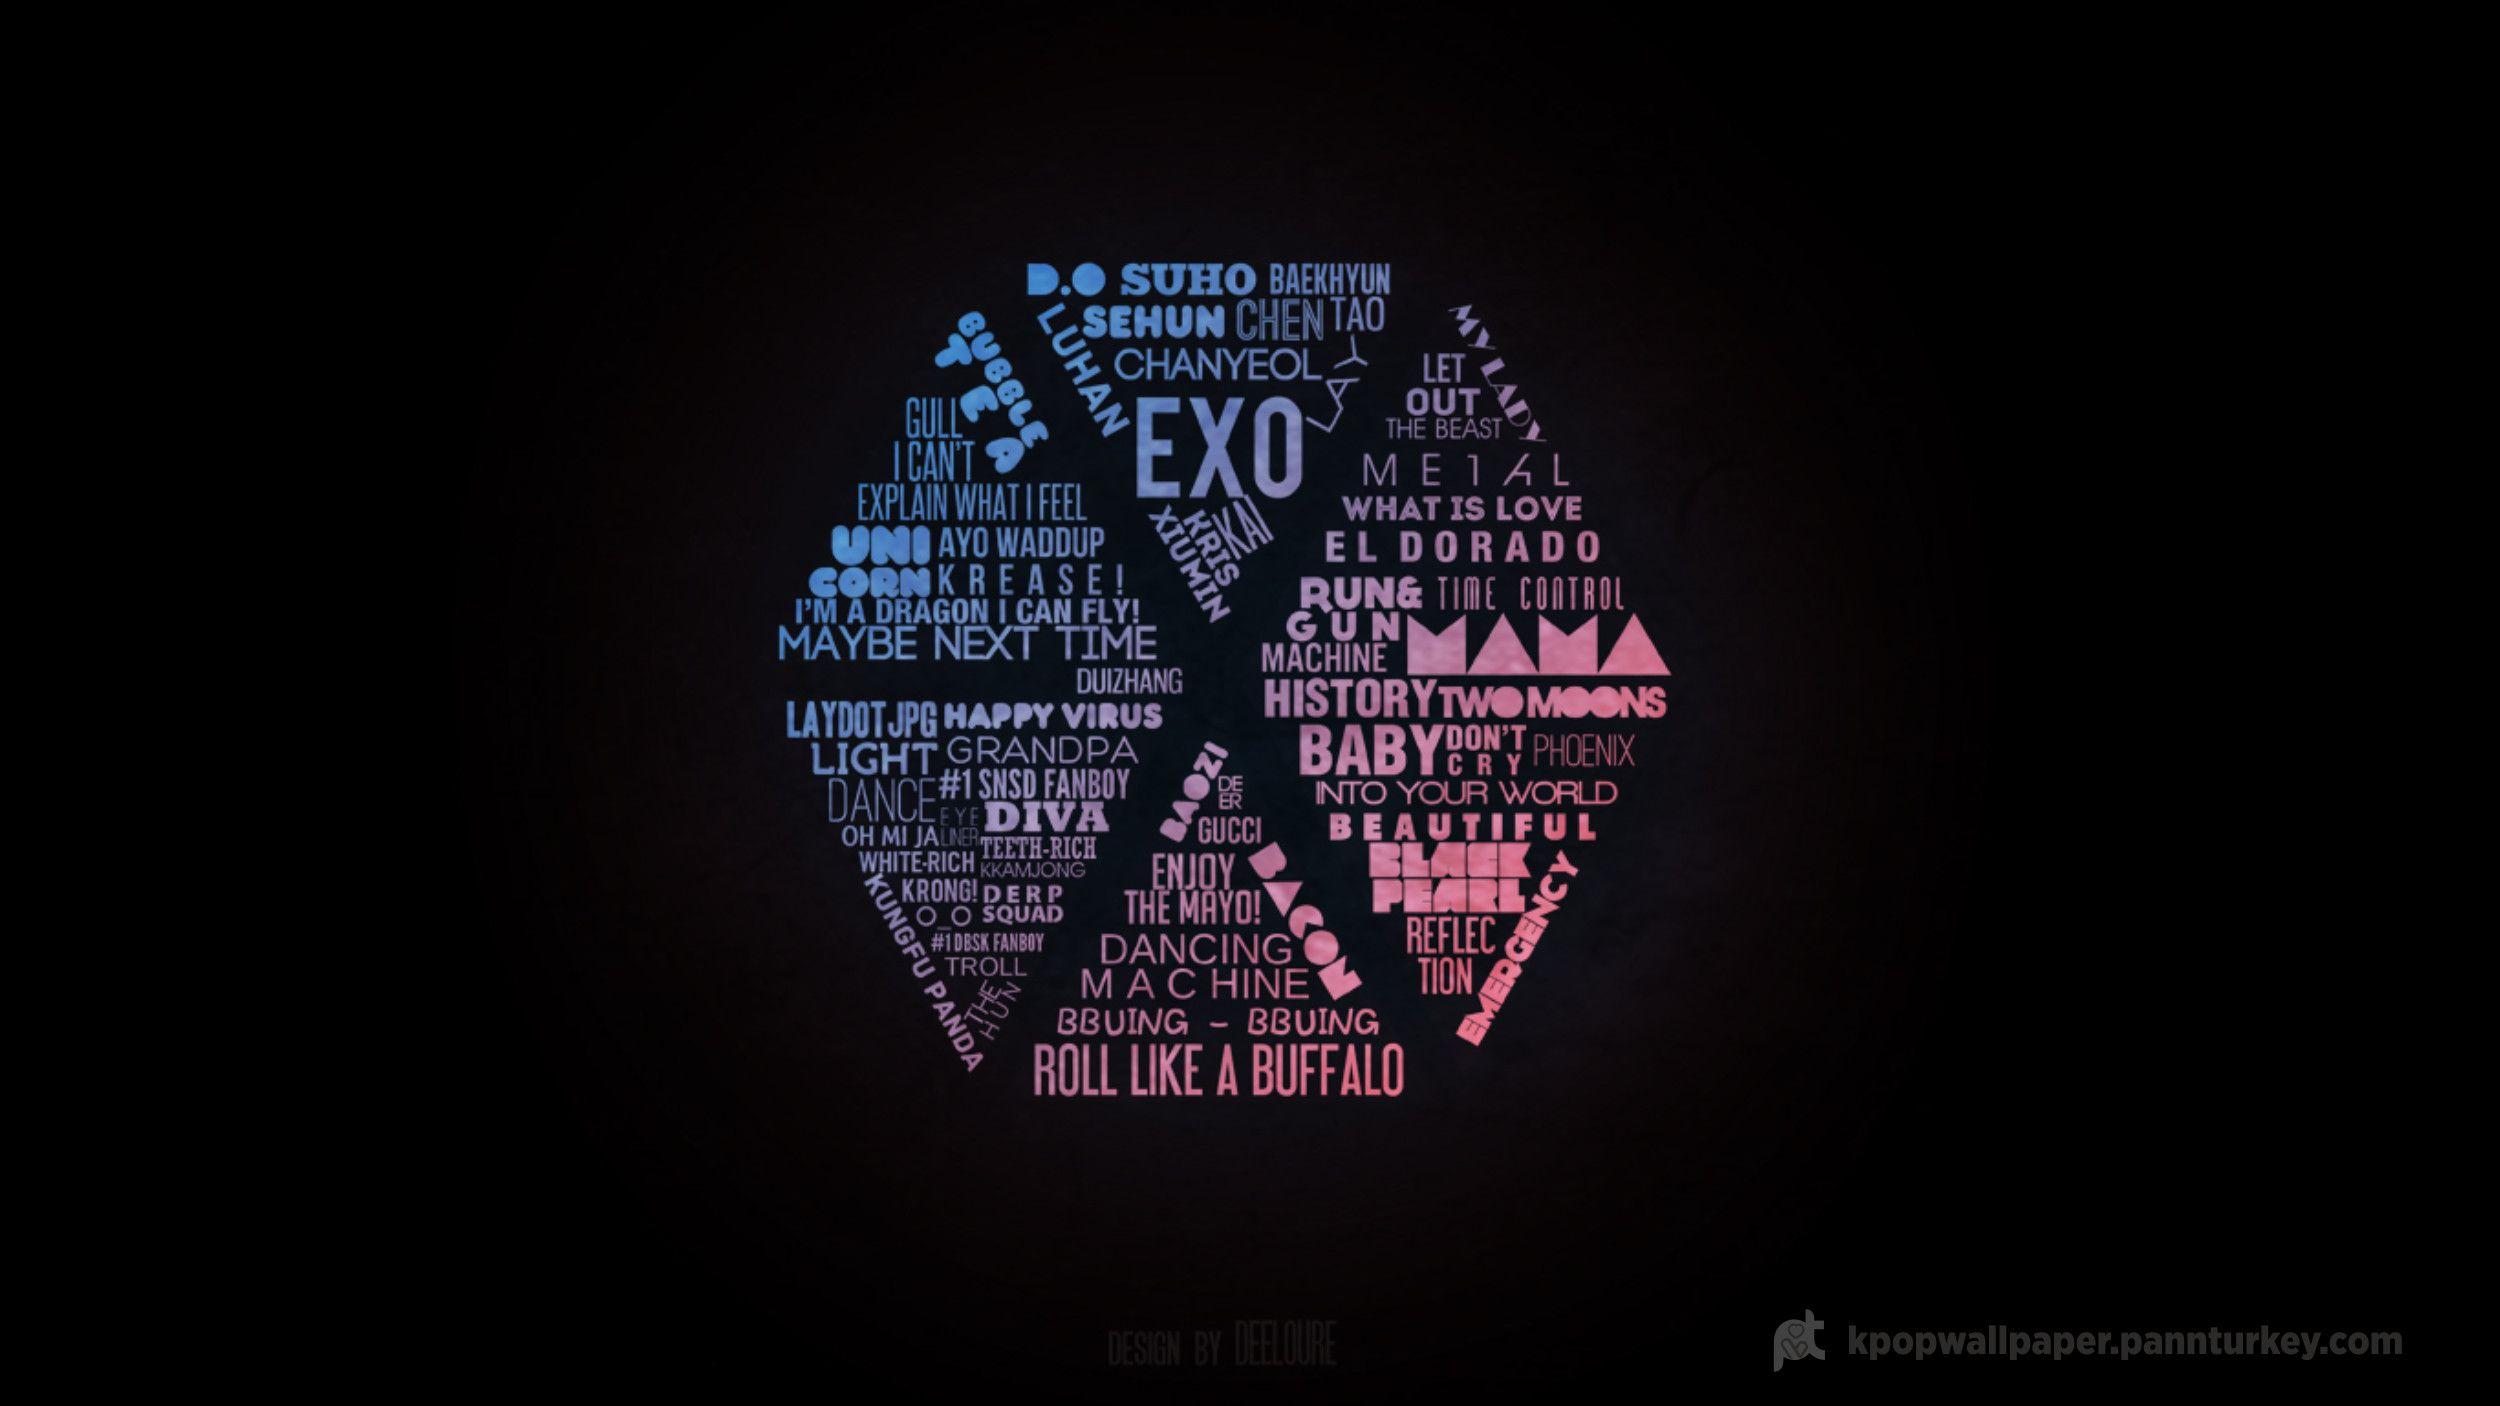 EXO Logo Wallpapers là một trong những chủ đề đang được nhiều fan của EXO yêu thích nhất. Chúng tôi có một bộ sưu tập các hình nền mang đậm phong cách của nhóm nhạc này với logo độc đáo. Hãy truy cập để xem các hình nền đẹp mắt và độc đáo này giúp trang trí cho máy tính của bạn thêm phần sinh động!